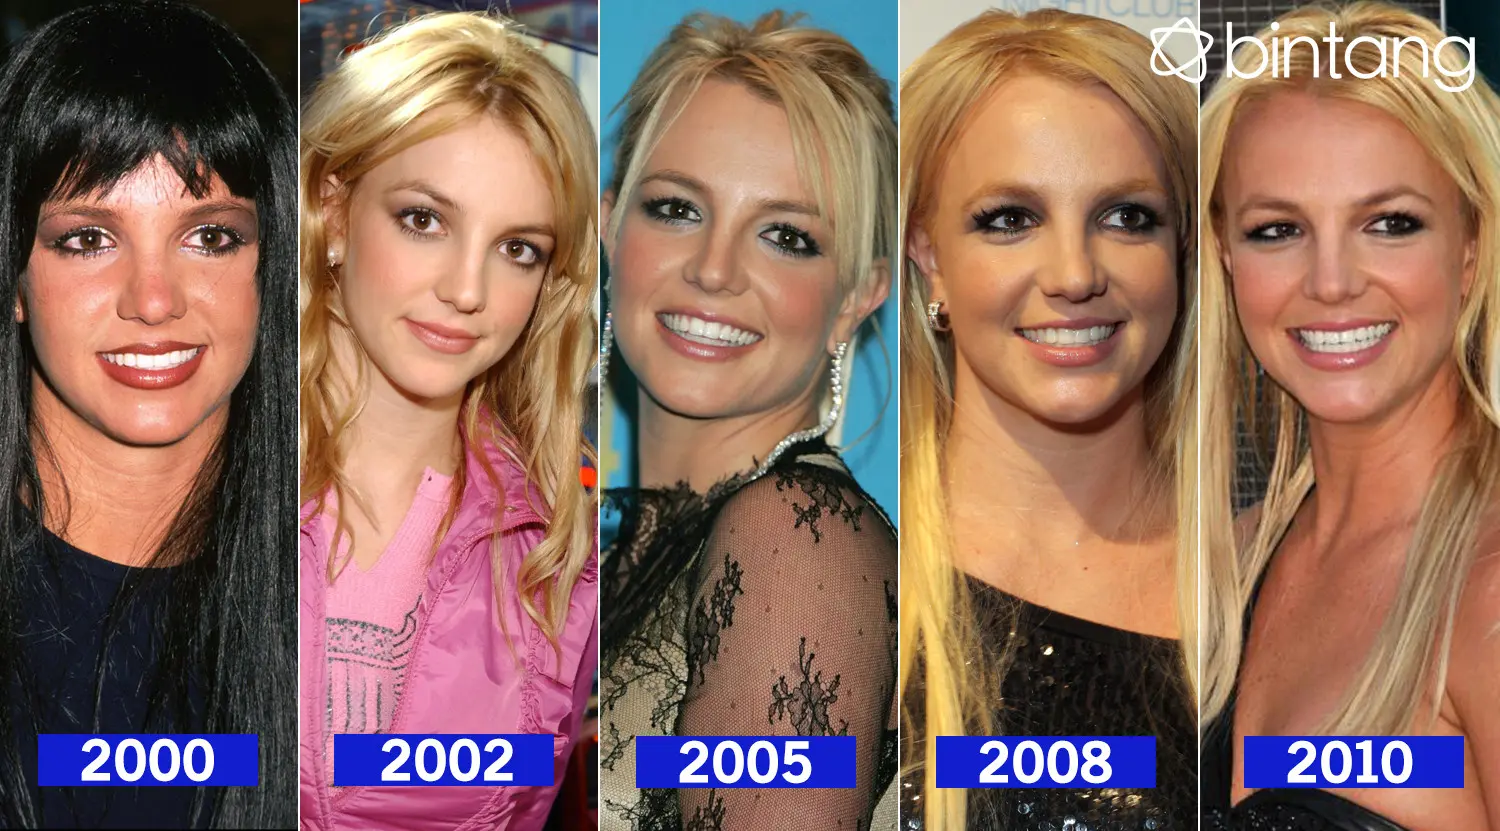 Melihat kehidupan Britney Spears dari segi karier dan cinta. (DI: Nurman Abdul Hakim/Bintang.com)